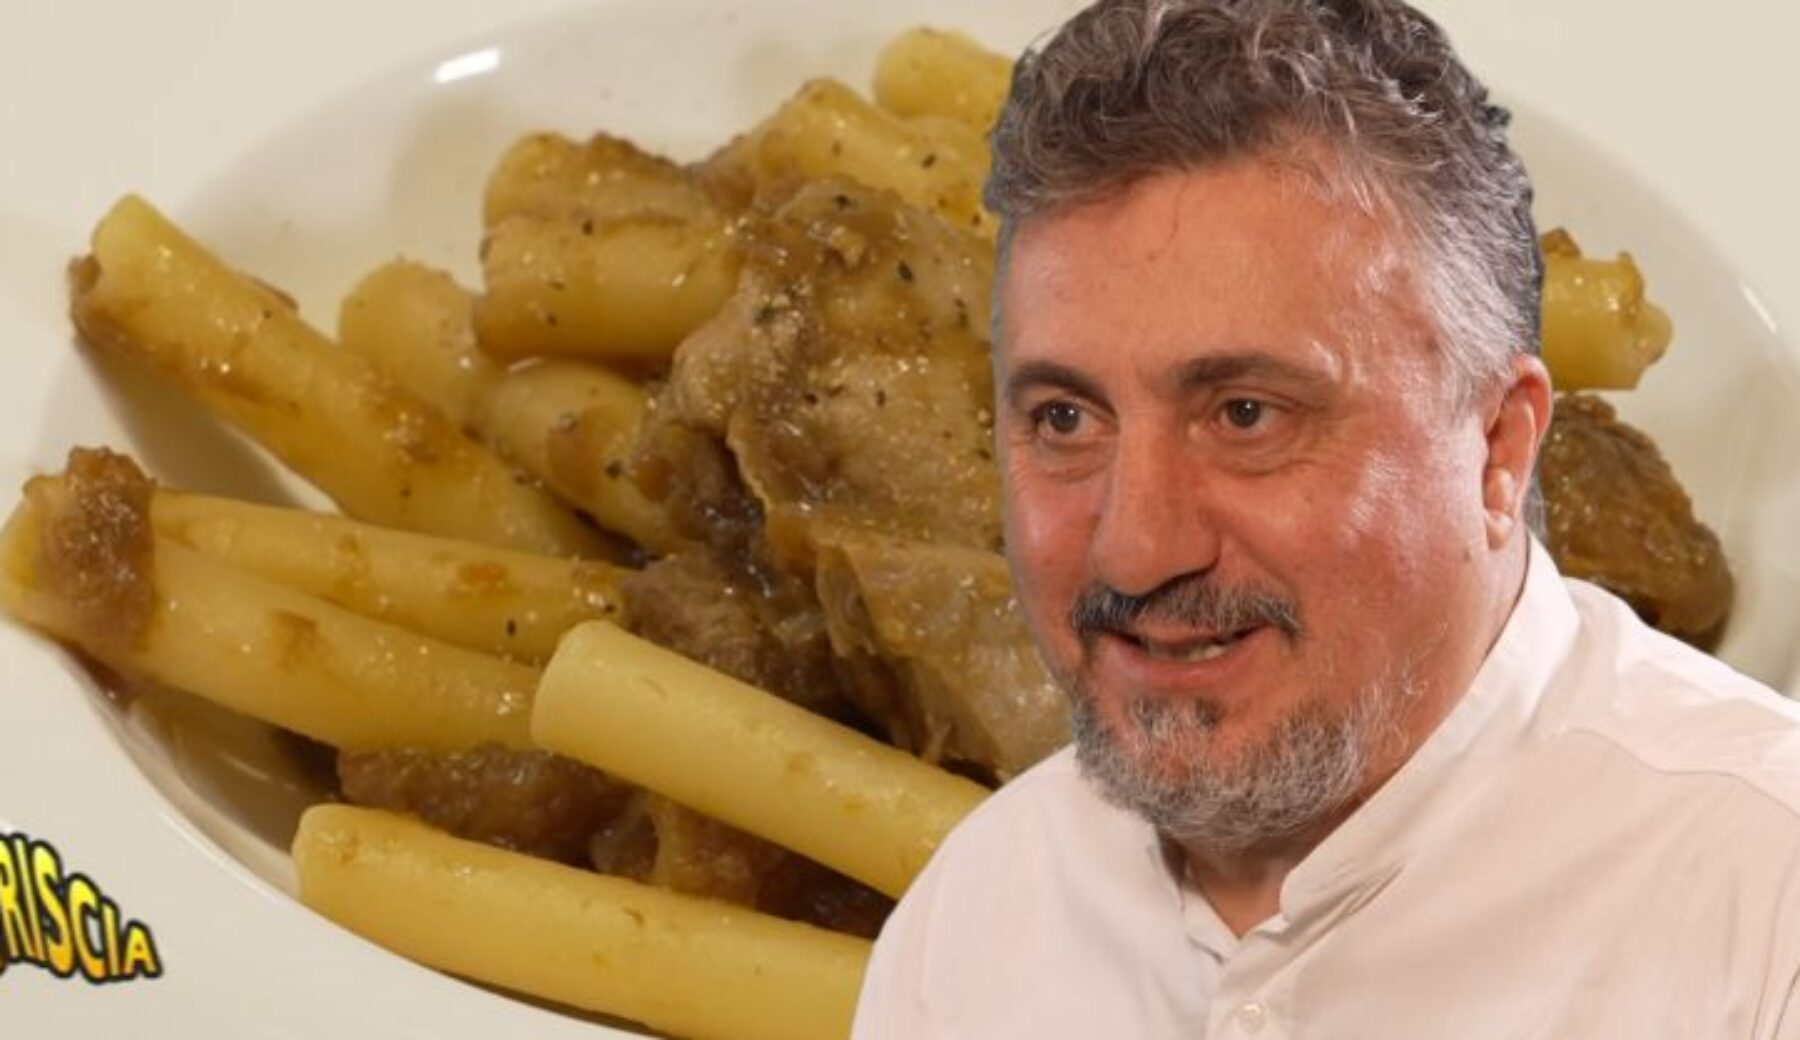 Domani sera a Striscia, nella rubrica “Capolavori italiani in cucina”, la Genovese di tonno di Pasquale Torrente